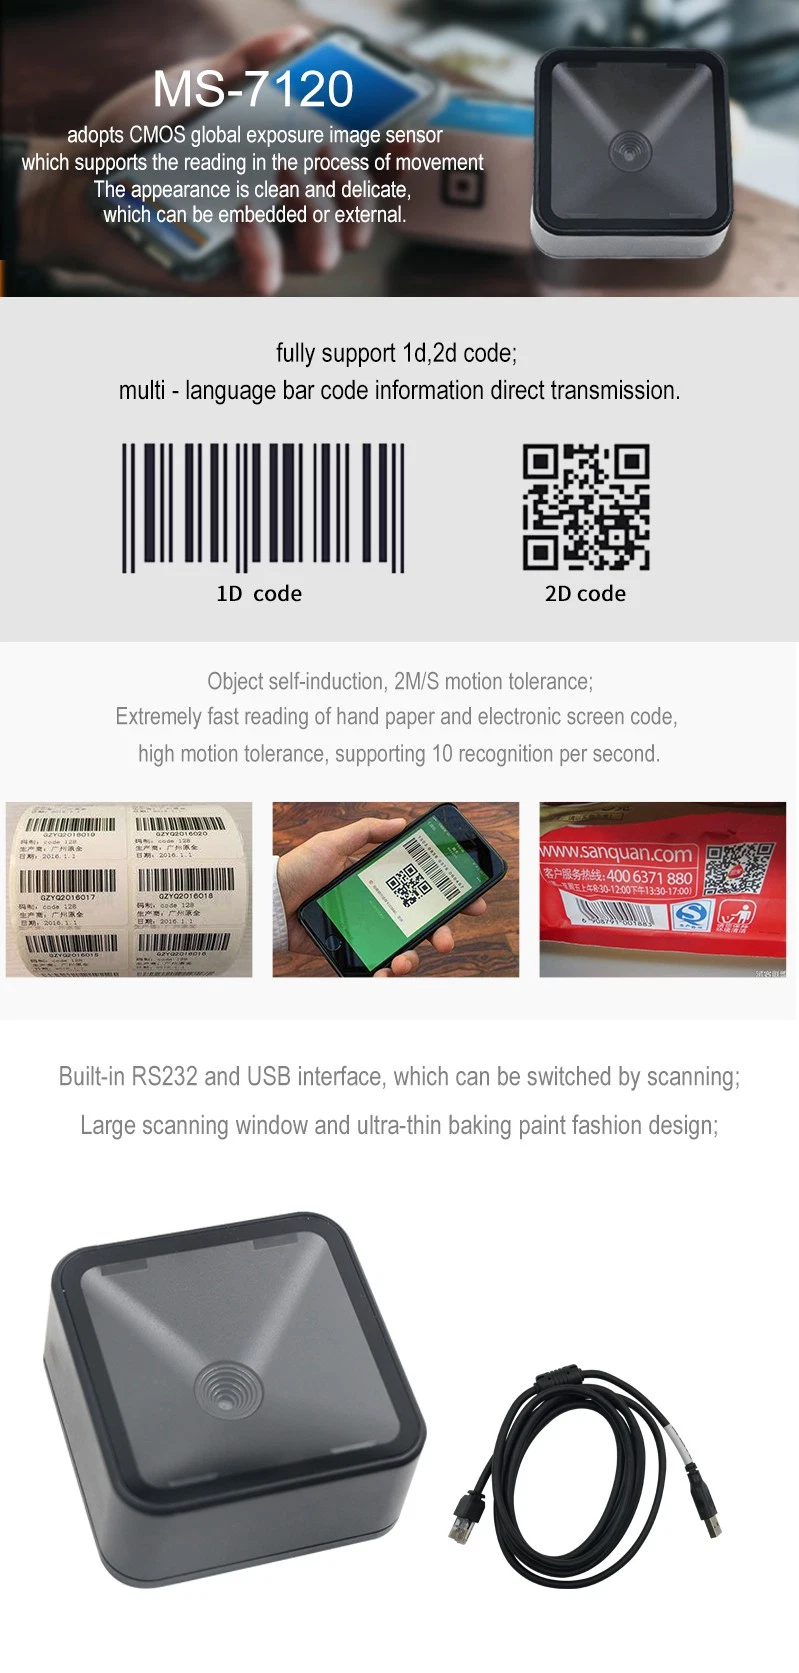 OEM Embedded USB RS232 1d 2D Kiosk Barcode Scanner for Kiosk Machine